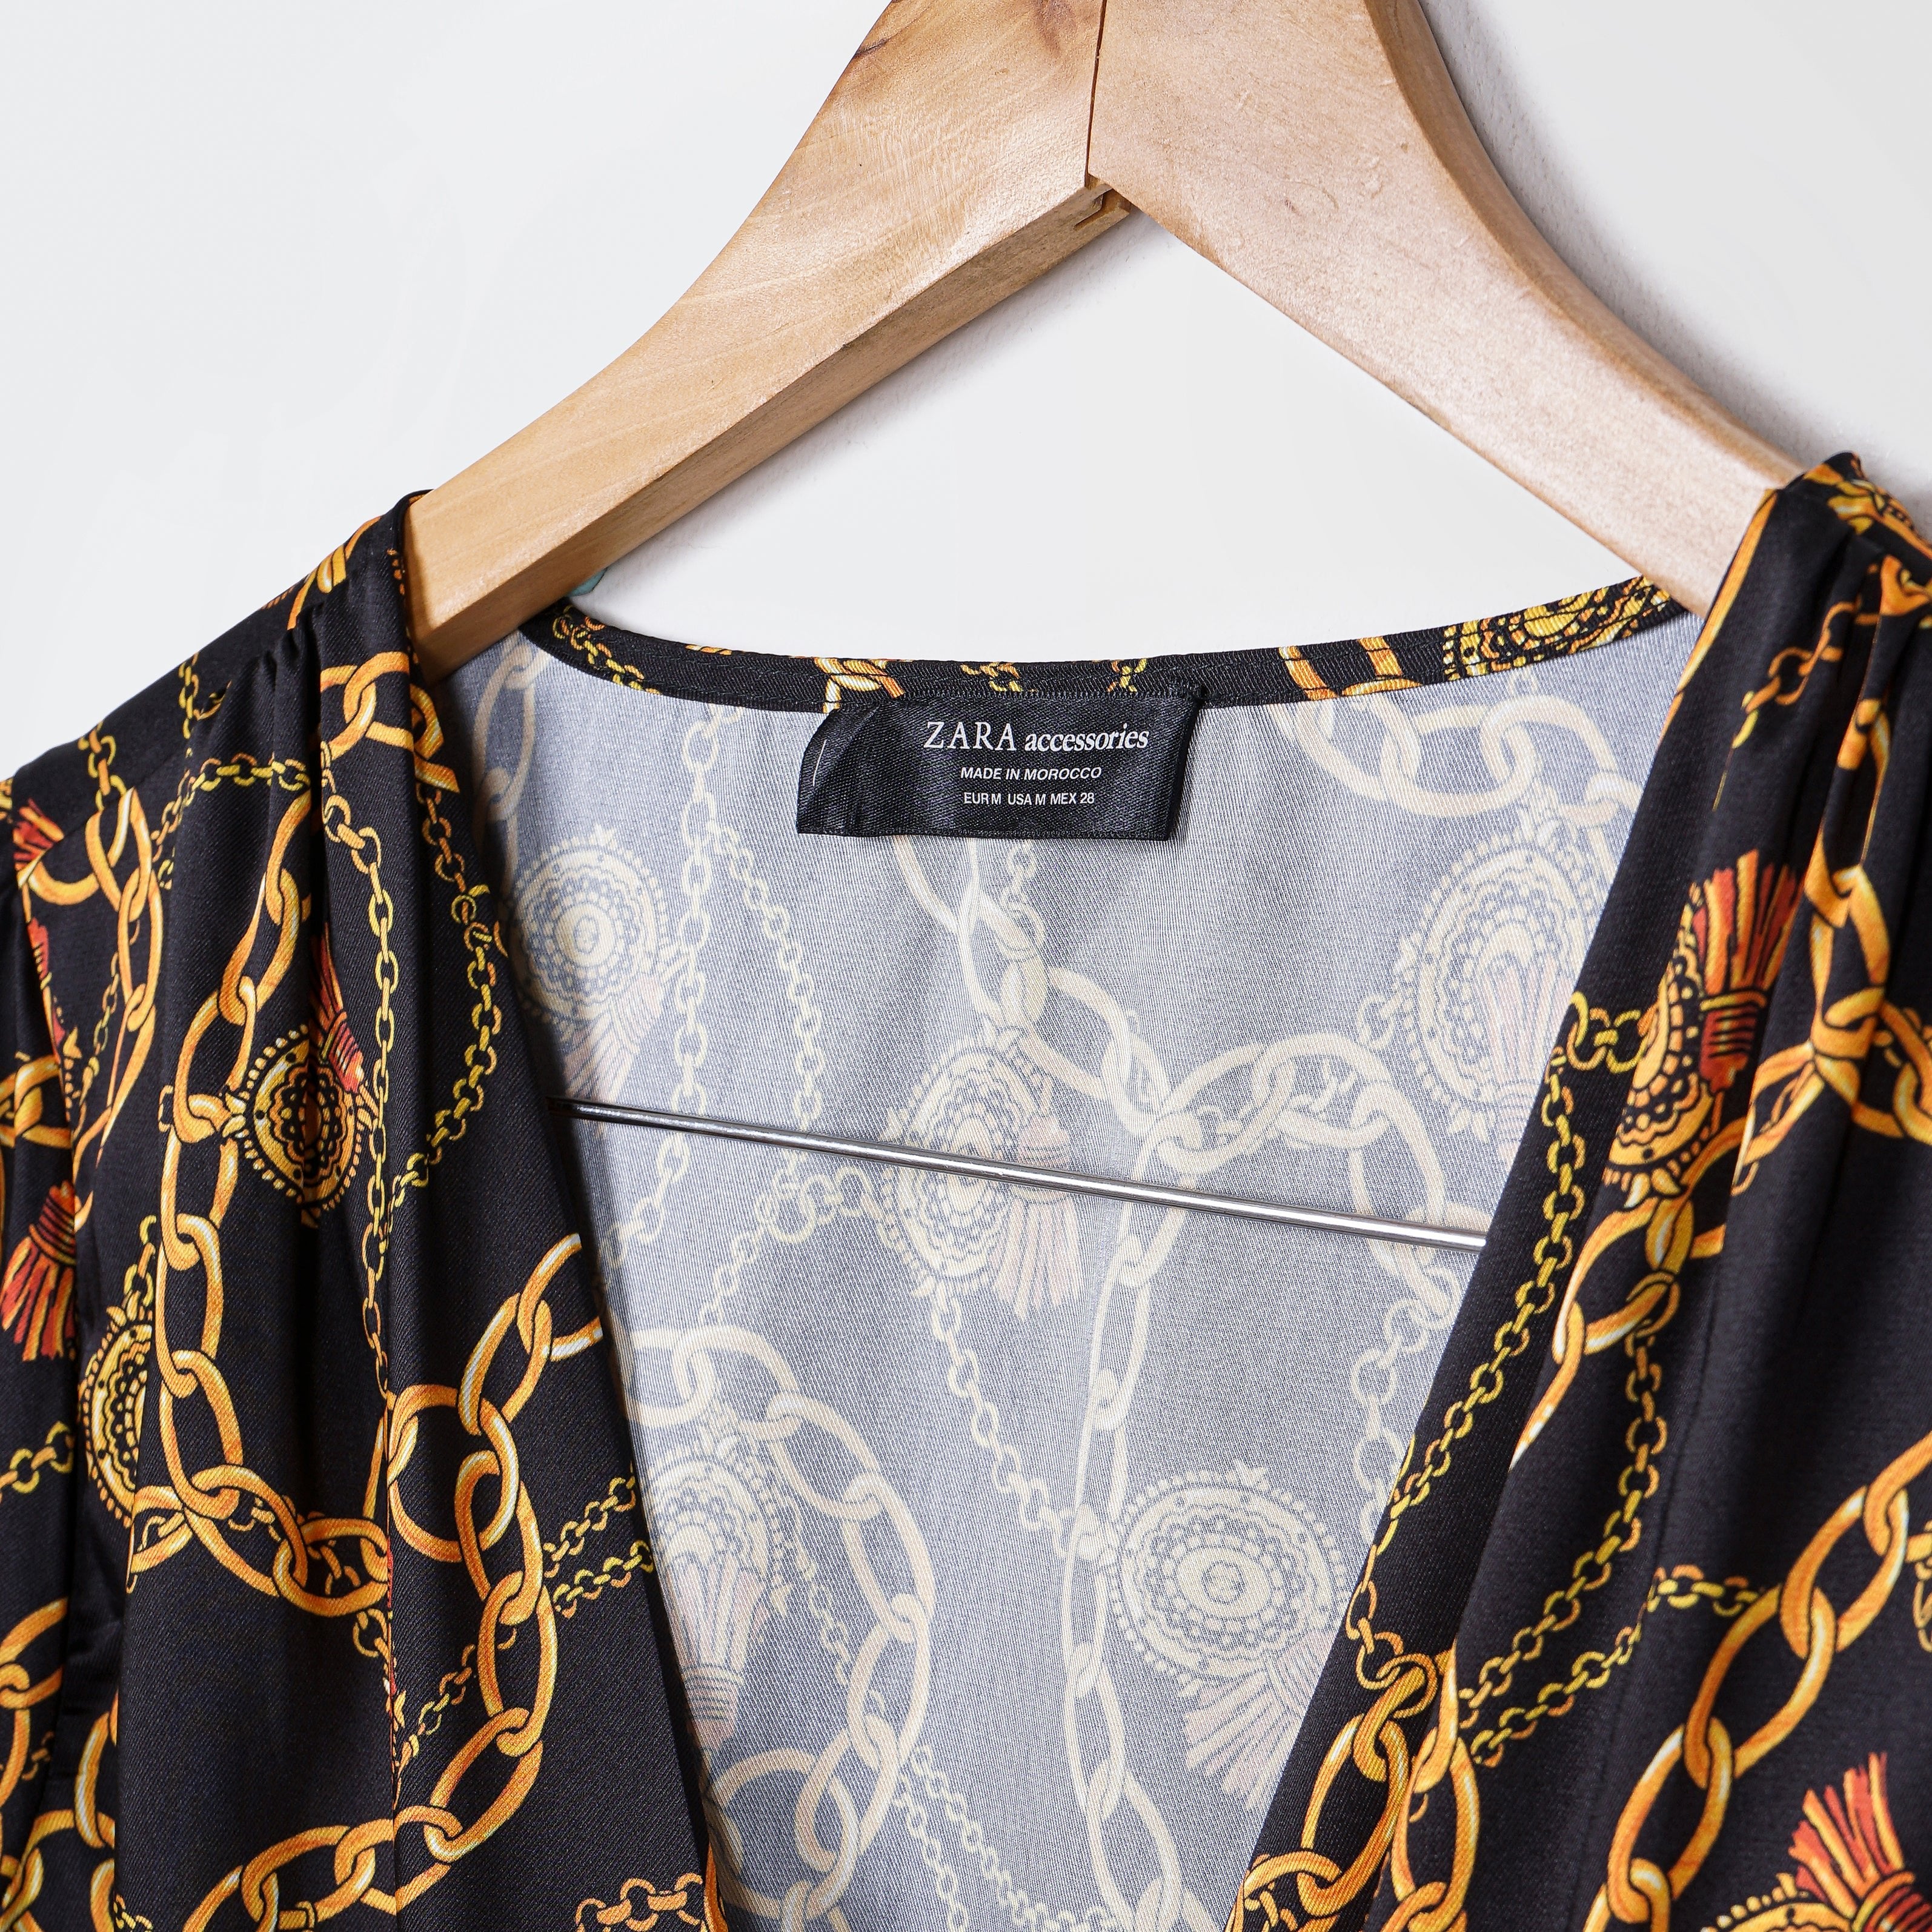 Zara Long Sleeves Printed Body Suit - Marca Deals - Zara